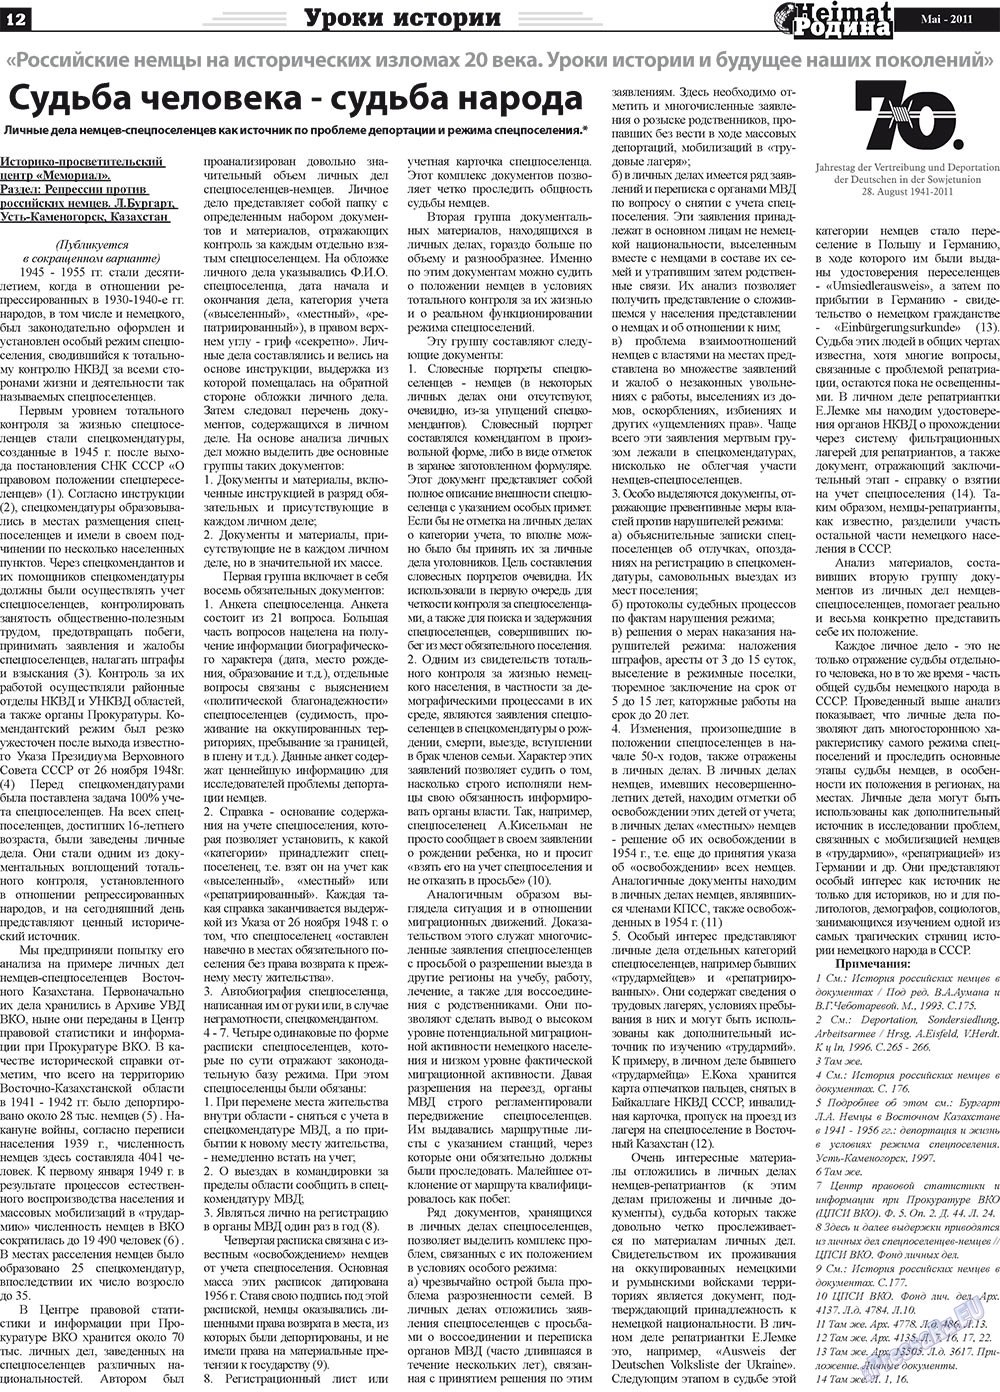 Heimat-Родина (газета). 2011 год, номер 5, стр. 12